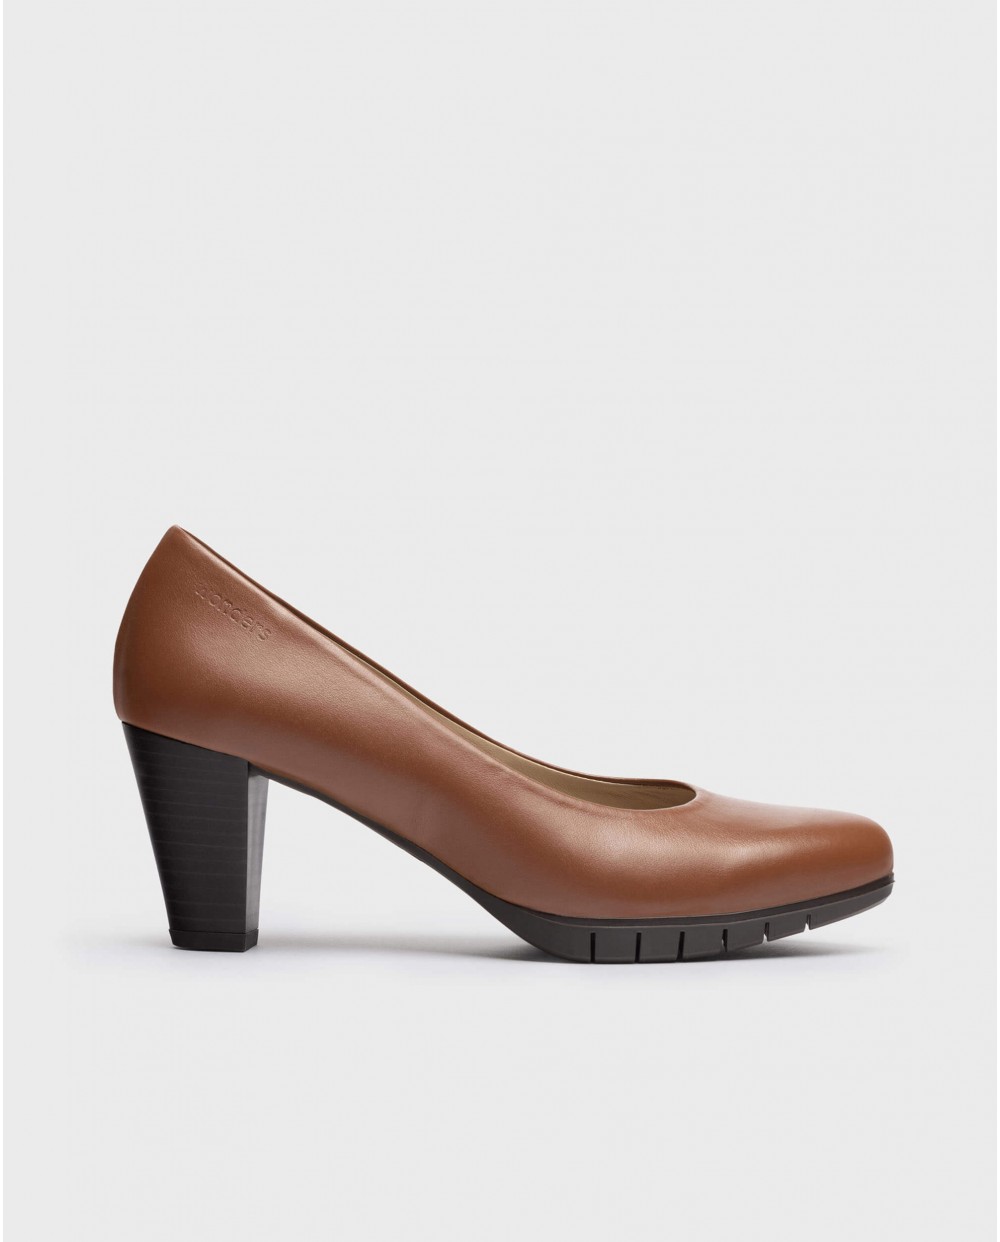 Wonders-Heels-High heeled shoe